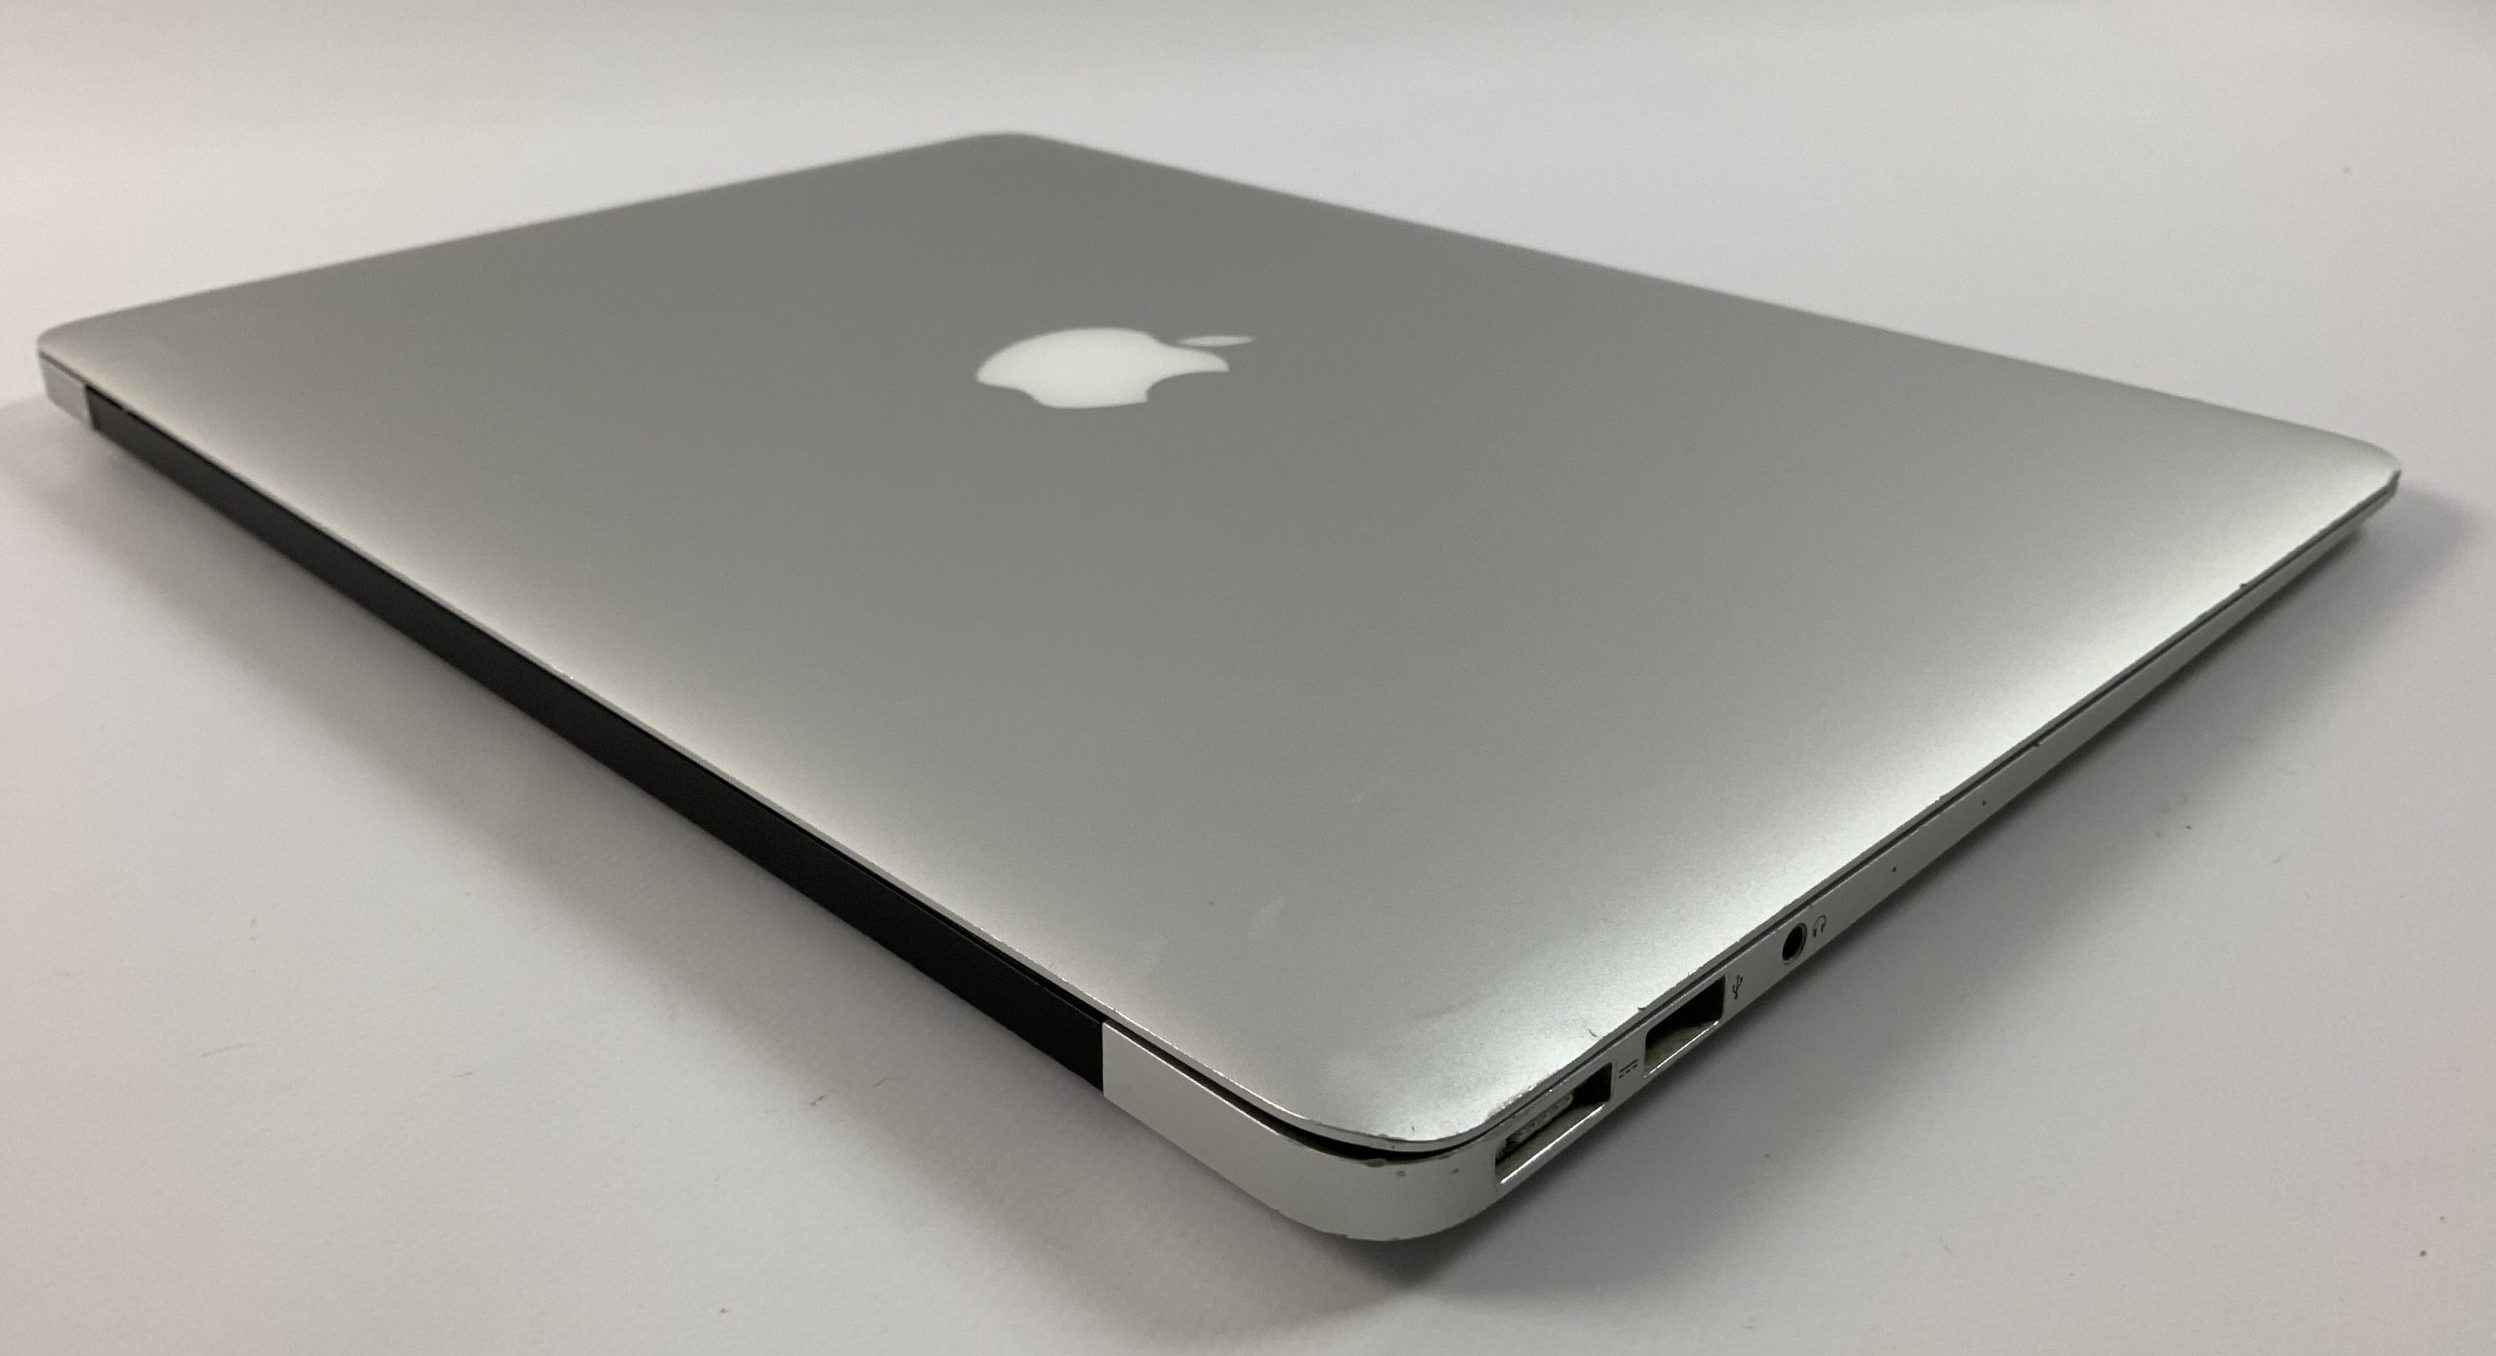 MacBook Air 13" Mid 2017 (Intel Core i5 1.8 GHz 8 GB RAM 256 GB SSD), Intel Core i5 1.8 GHz, 8 GB RAM, 256 GB SSD, image 4